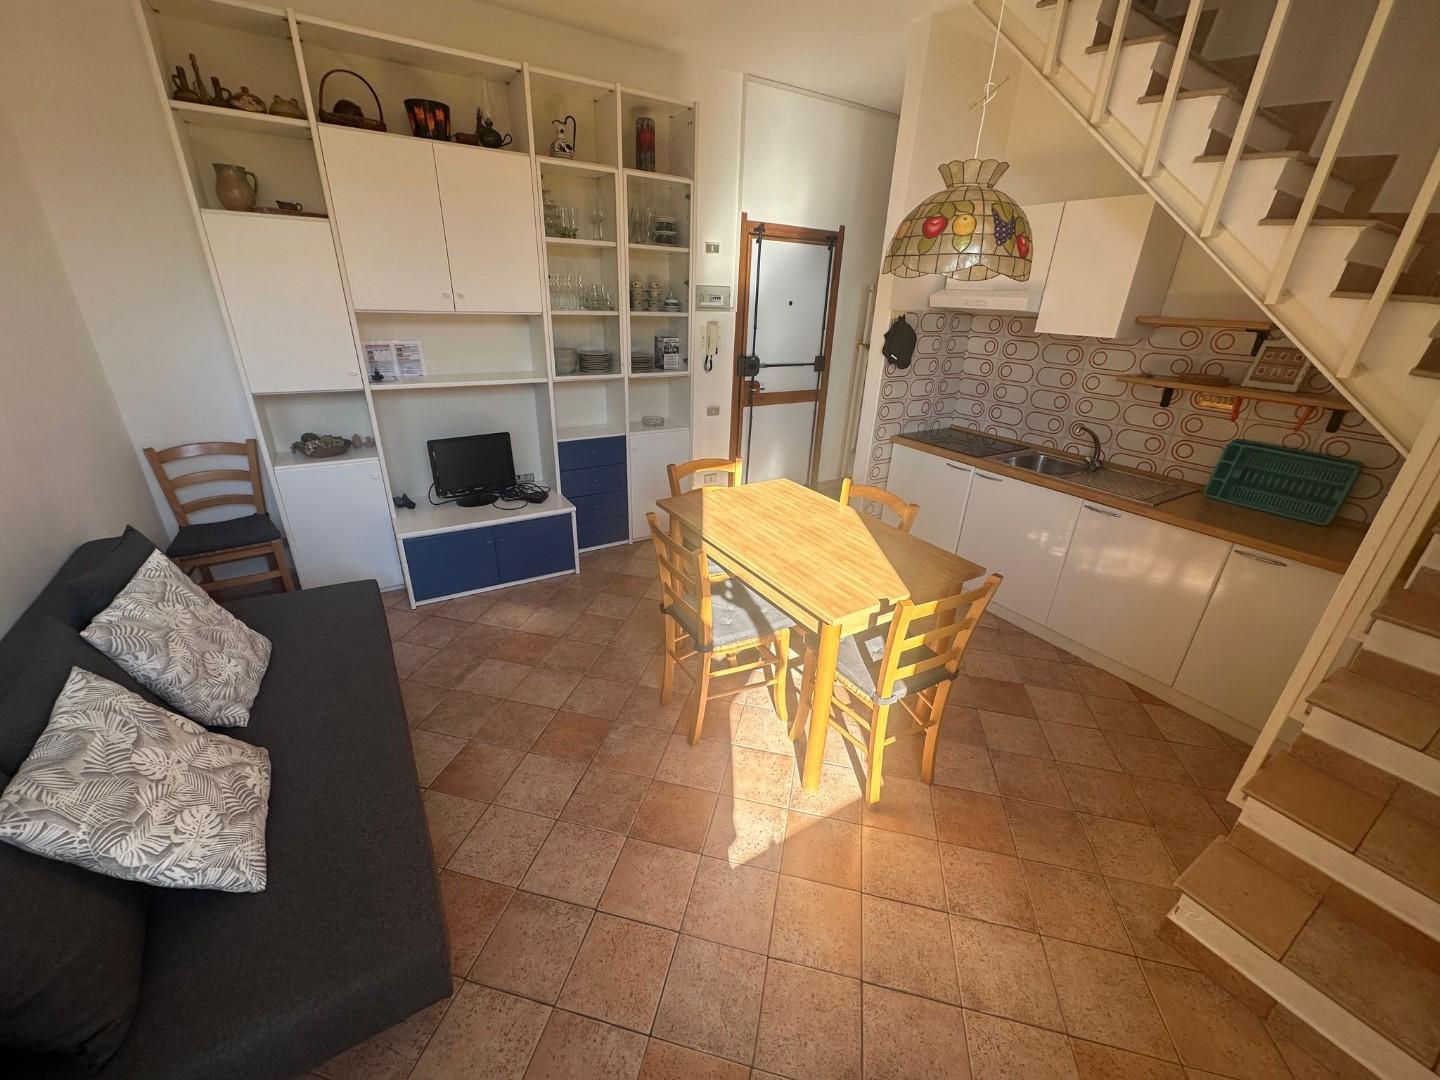 Apartment for sale in Rosignano Marittimo (LI)